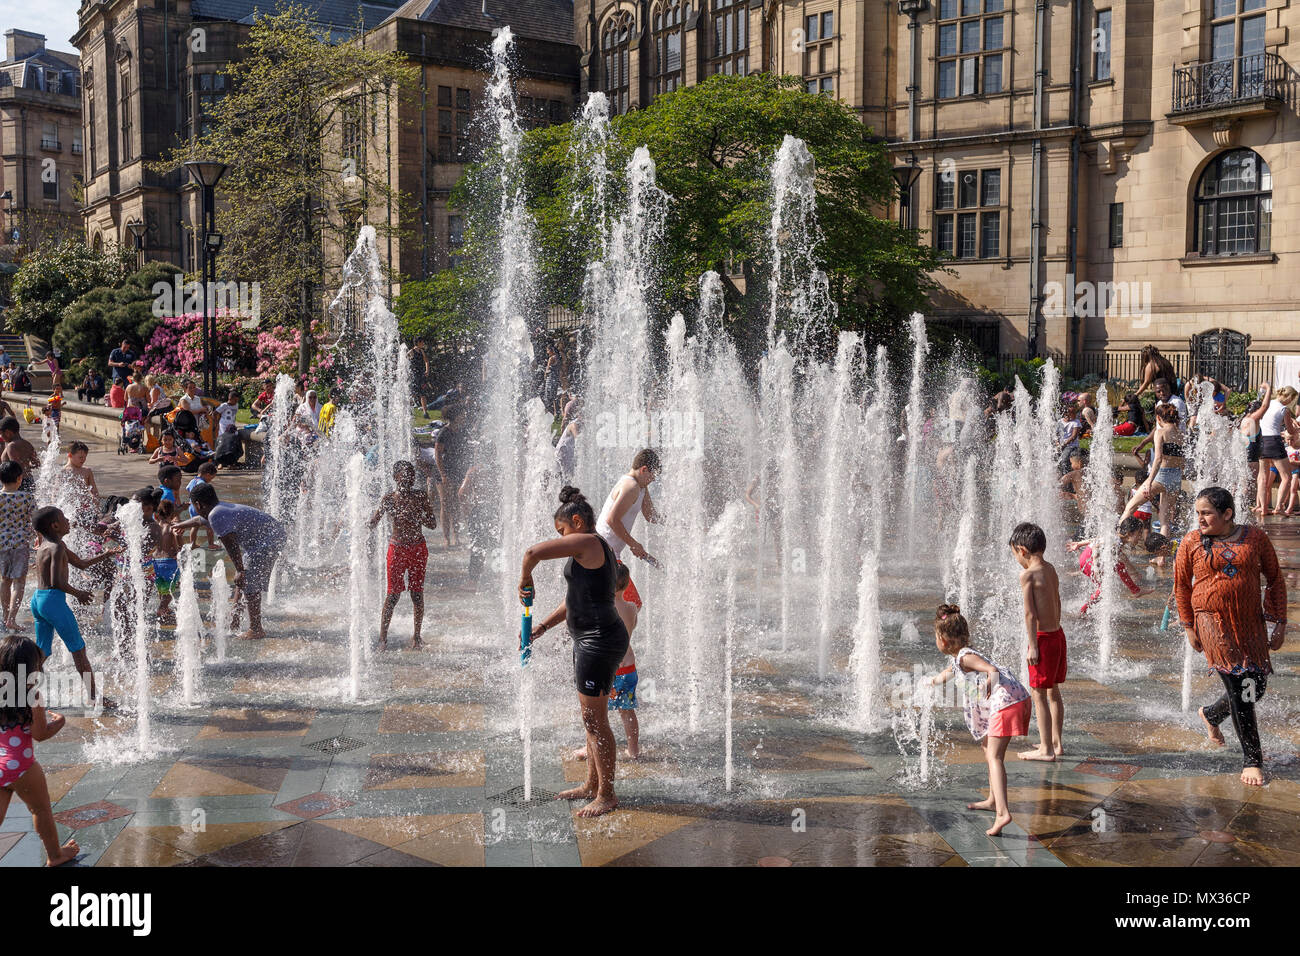 Kinder, die in einem Brunnen an einem der heißesten Tage des Jahres in Großbritannien. Sheffield Peace Gardens, Kinder, die spielen, Wasserfontänen. Stockfoto